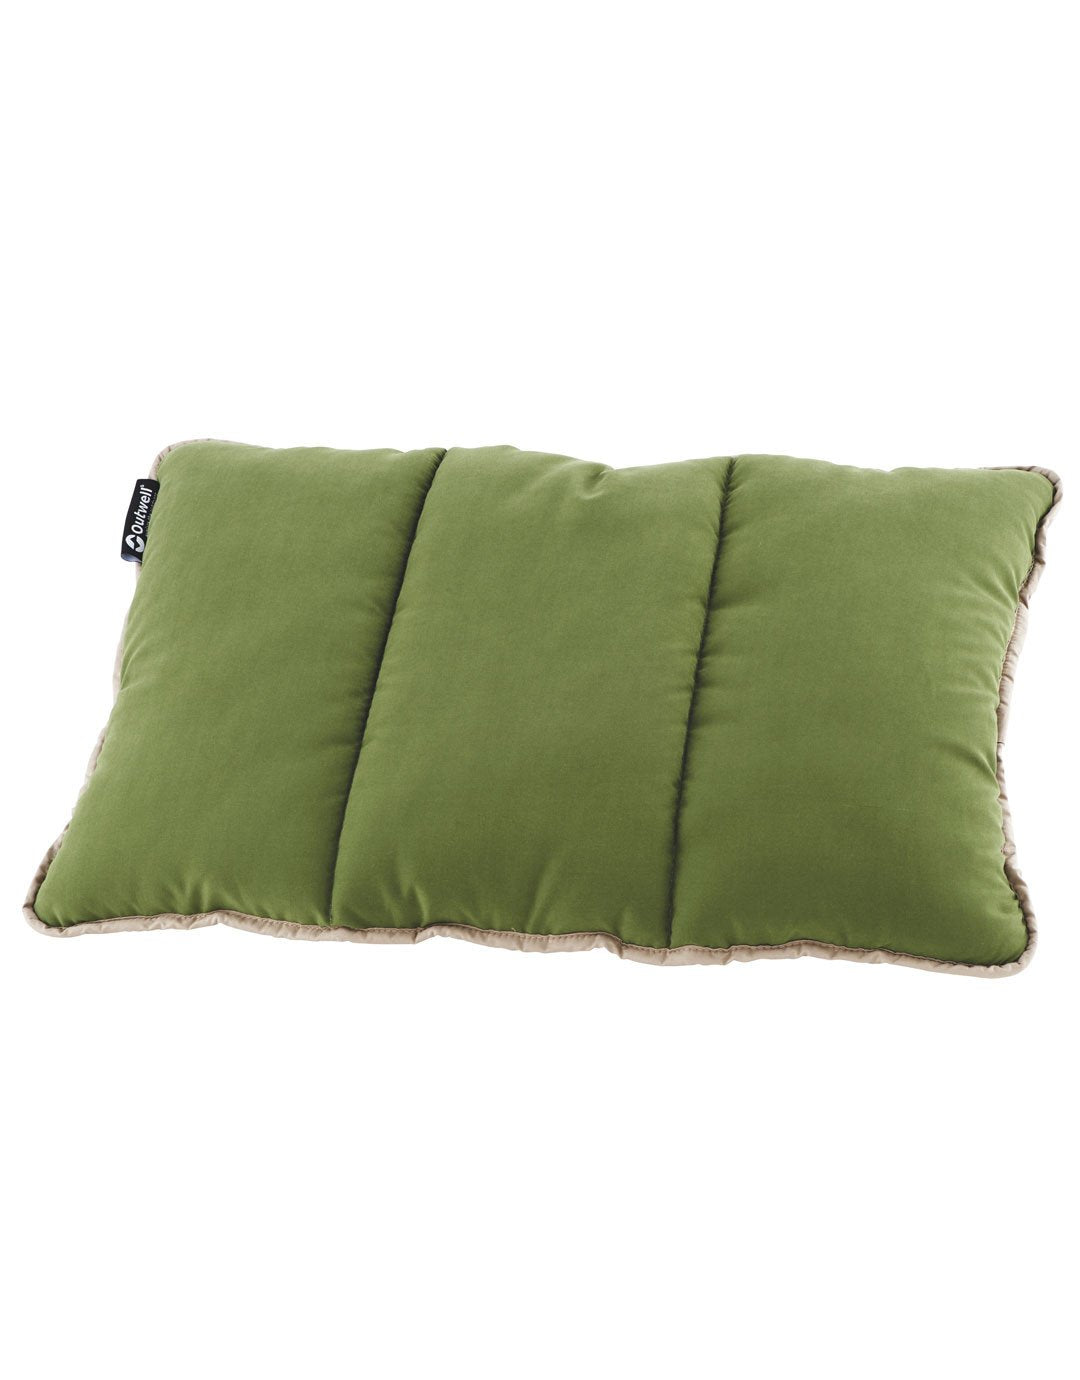 Constellation Pillow - Green